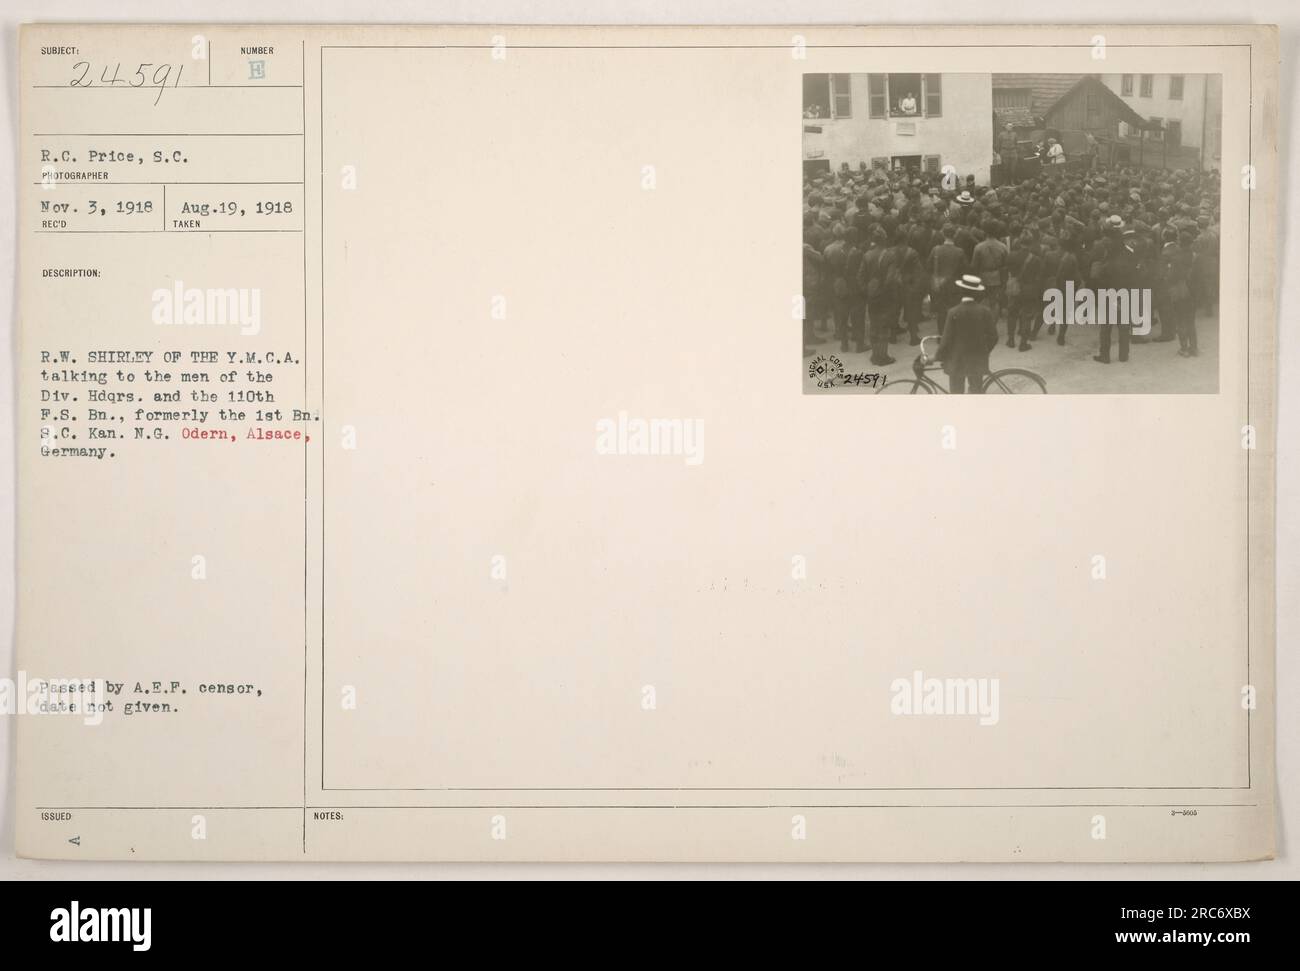 Rappresentante Y.M.C.A. R.W. Shirley viene vista parlare con i soldati del quartier generale della Divisione e del 110th F.S. Battaglione (precedentemente noto come 1st Battalion S.C. Kan. N.G.) a Odern, Alsazia, Germania. La foto è stata scattata il 3 novembre 1918 dal fotografo R.C. Price. È stato ricevuto il 19 agosto 1918, ma la data in cui è stato approvato dall'A.E.P. censor è sconosciuta. Foto Stock